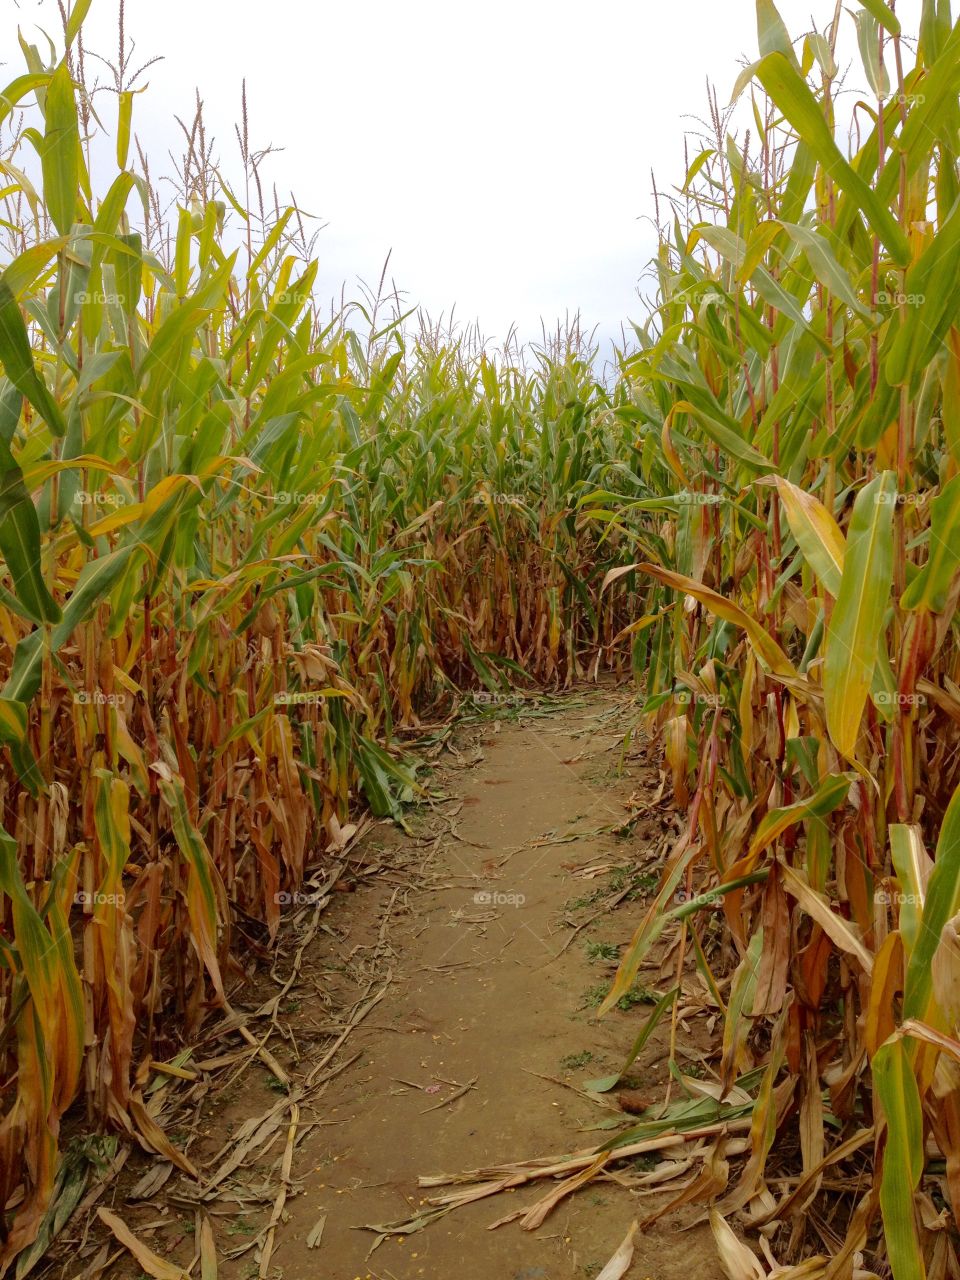 Corn Maze at Farm